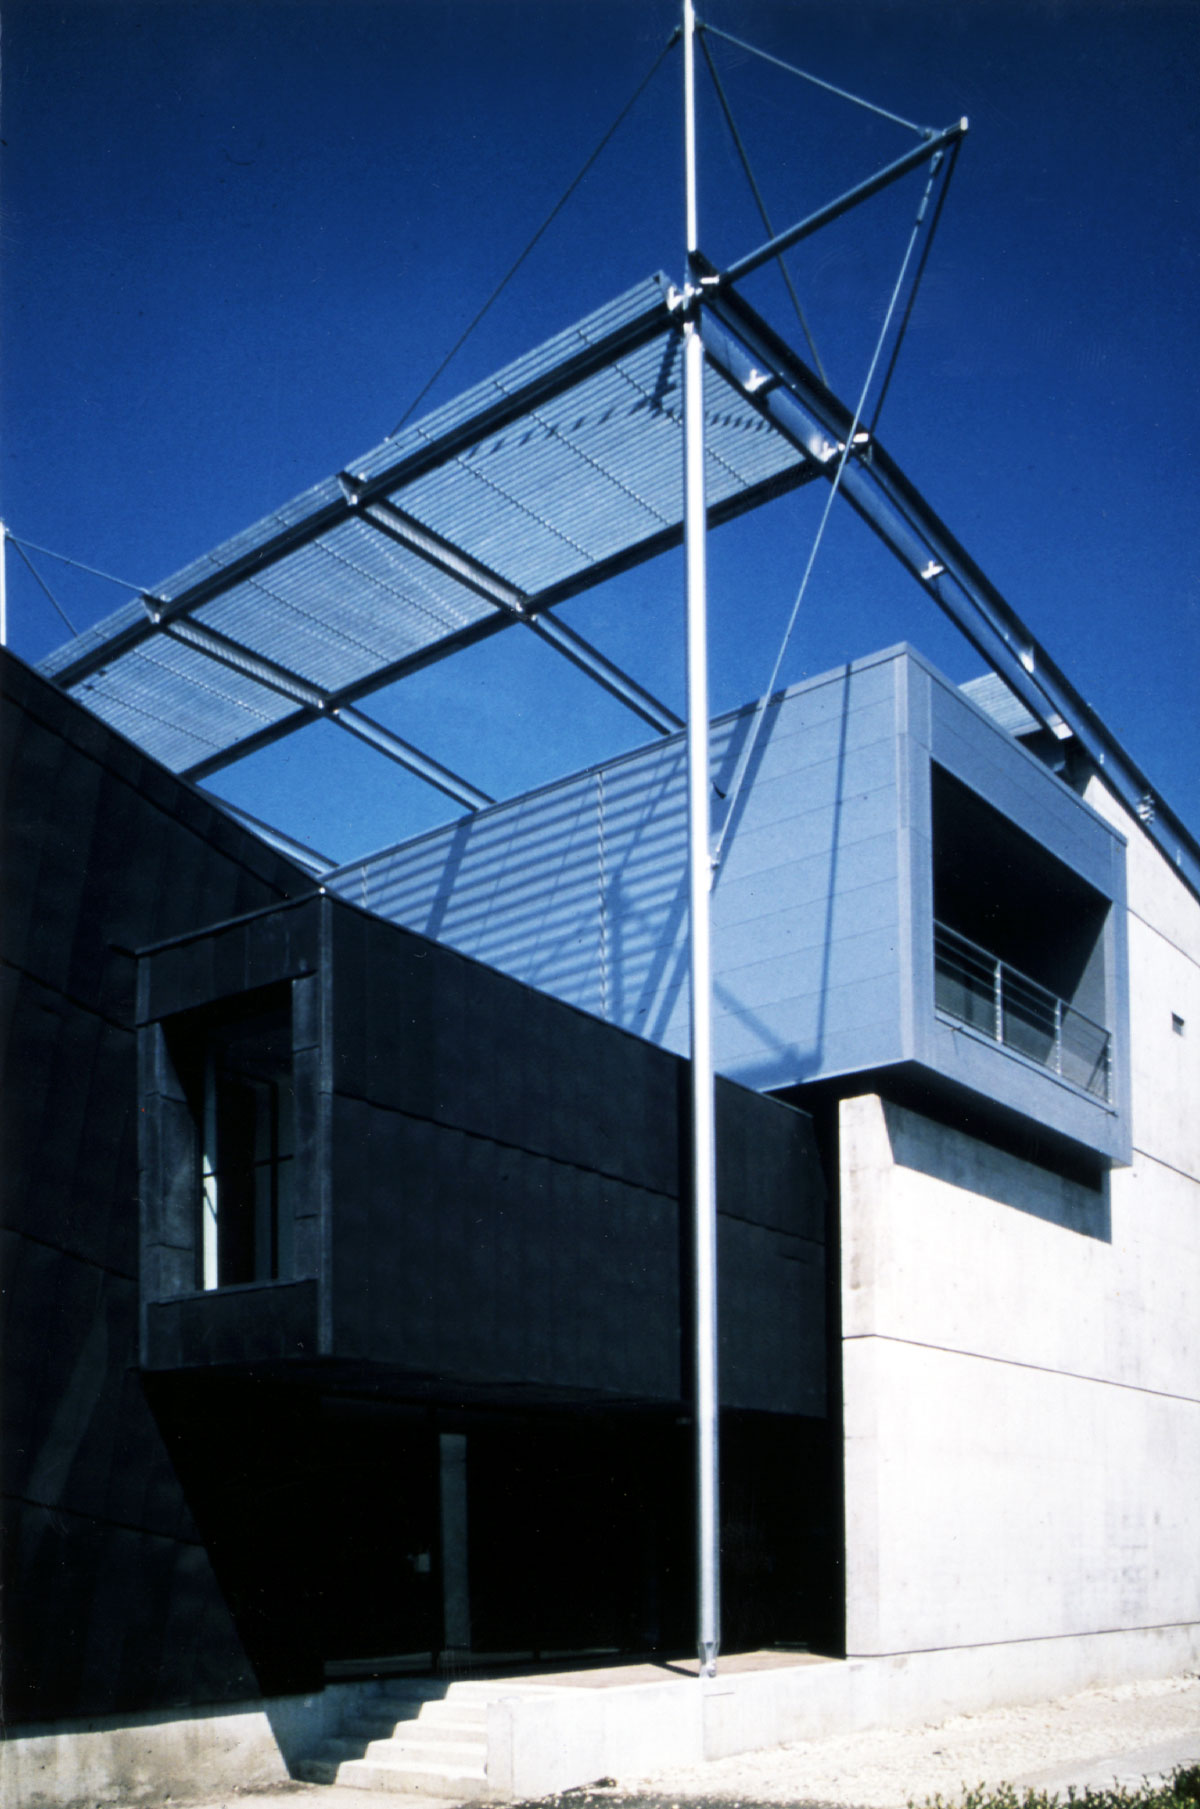 Maison Rhône-Alpes des Sciences de l’Homme Lipsky Rollet architecture et environnement architecte florence lipsky pascal rollet paris france 